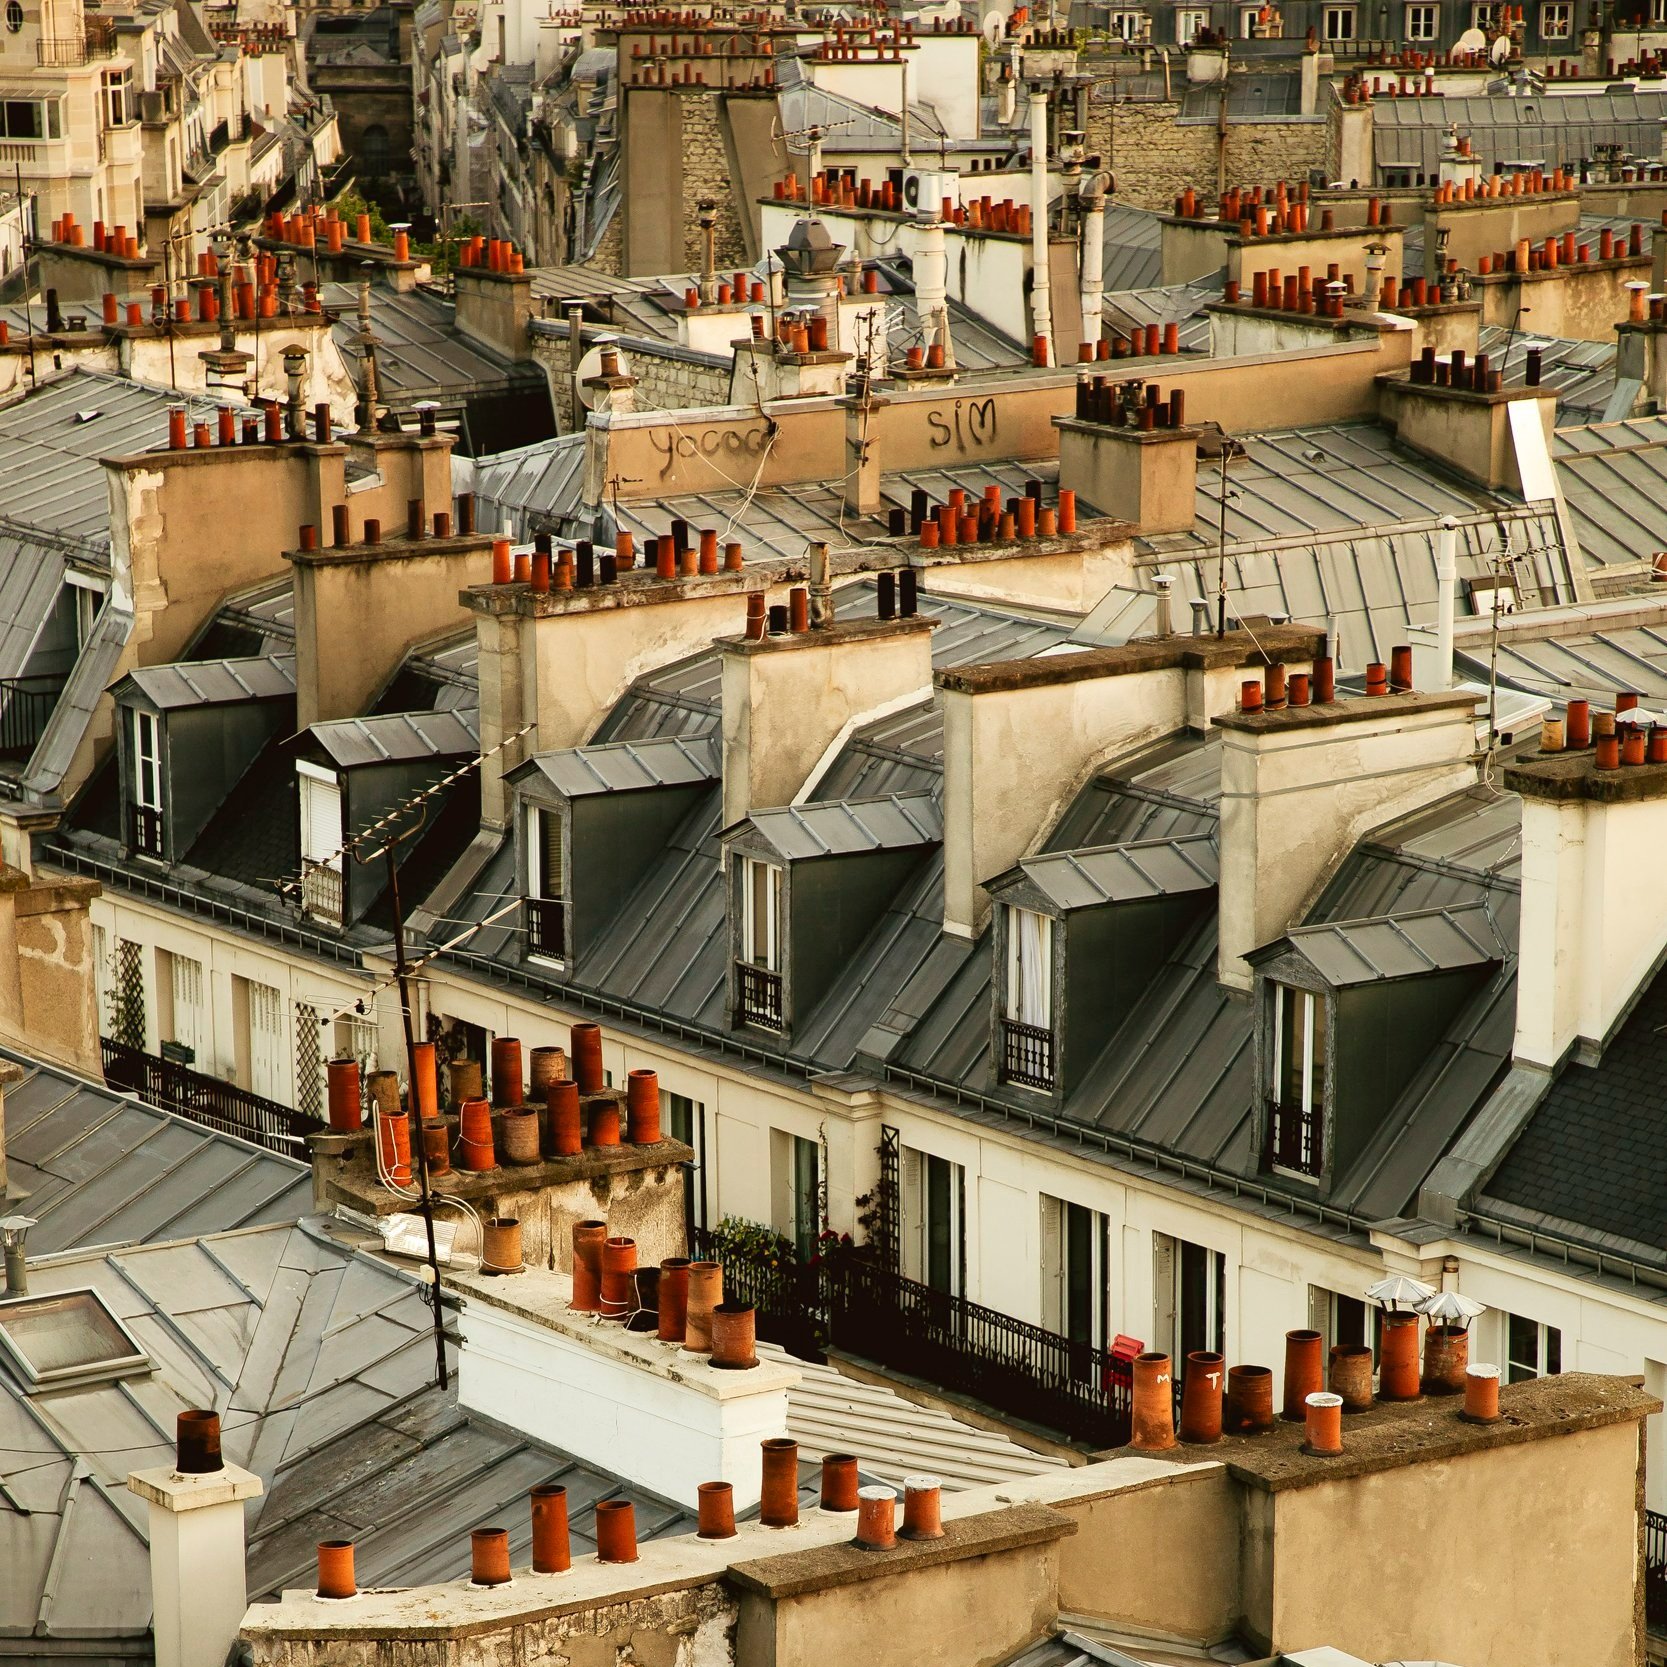 parisian-rooftops-complete-travel-guide-paris-france